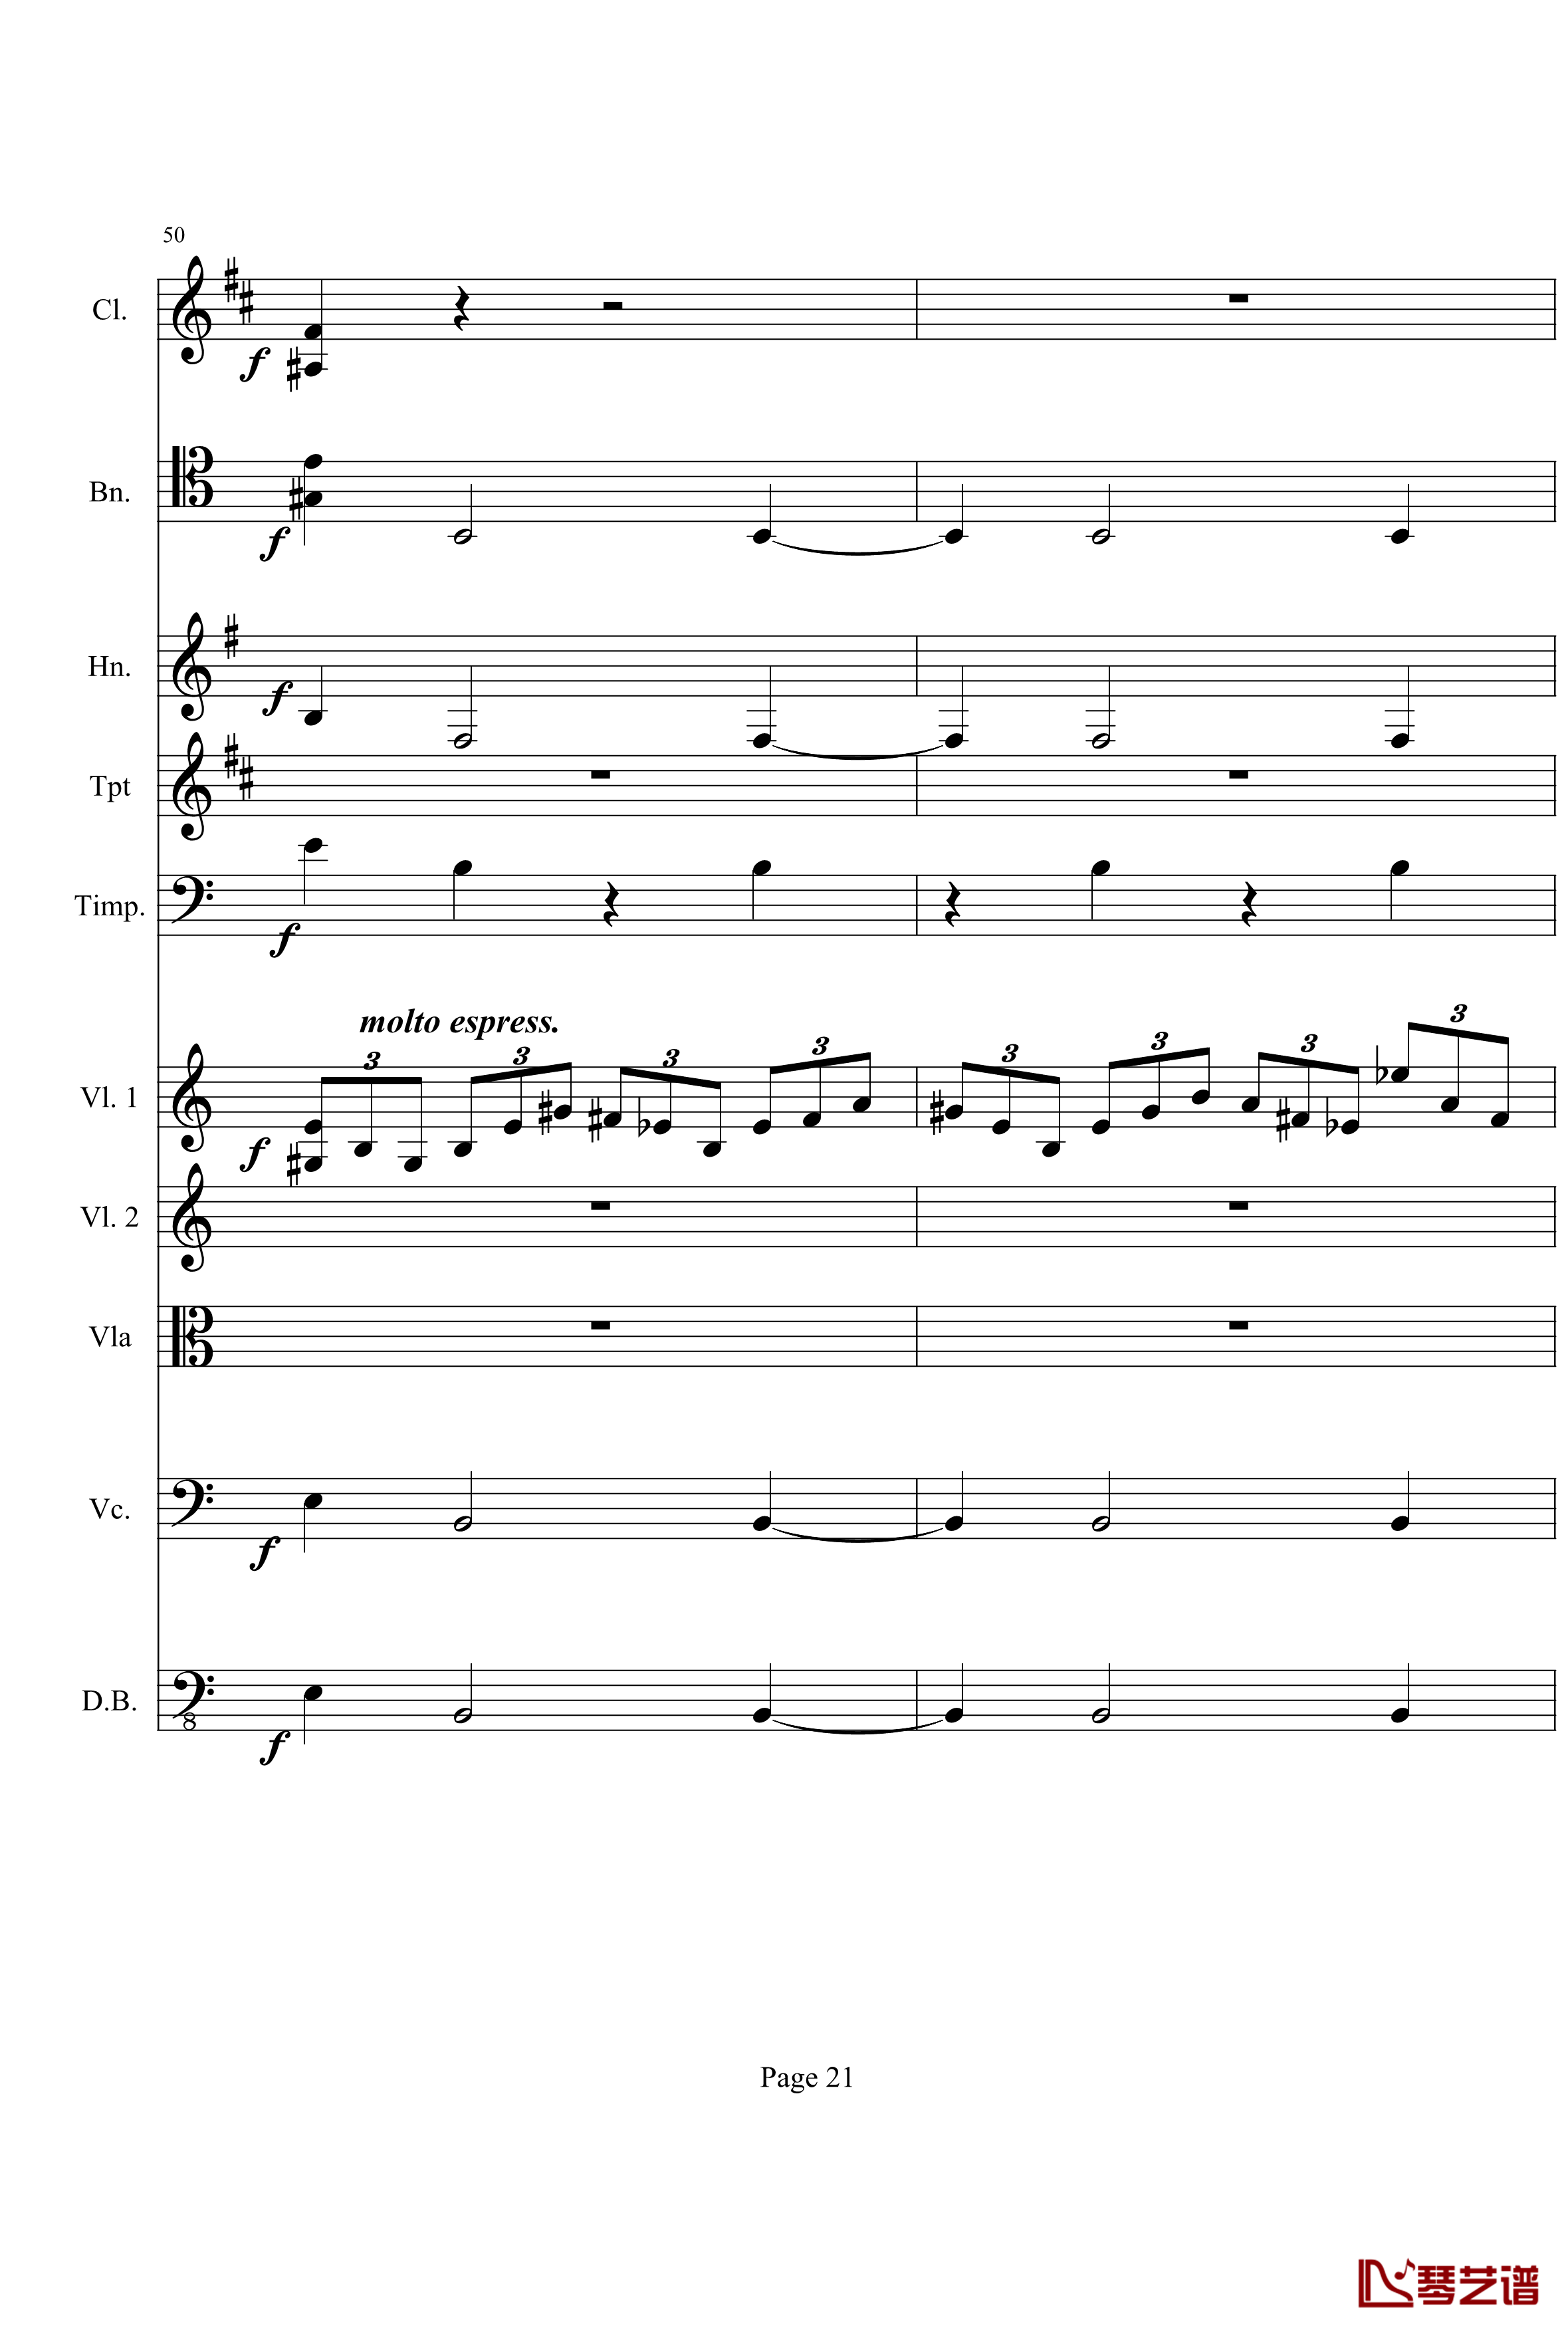 奏鸣曲之交响钢琴谱-第21首-Ⅰ-贝多芬-beethoven21